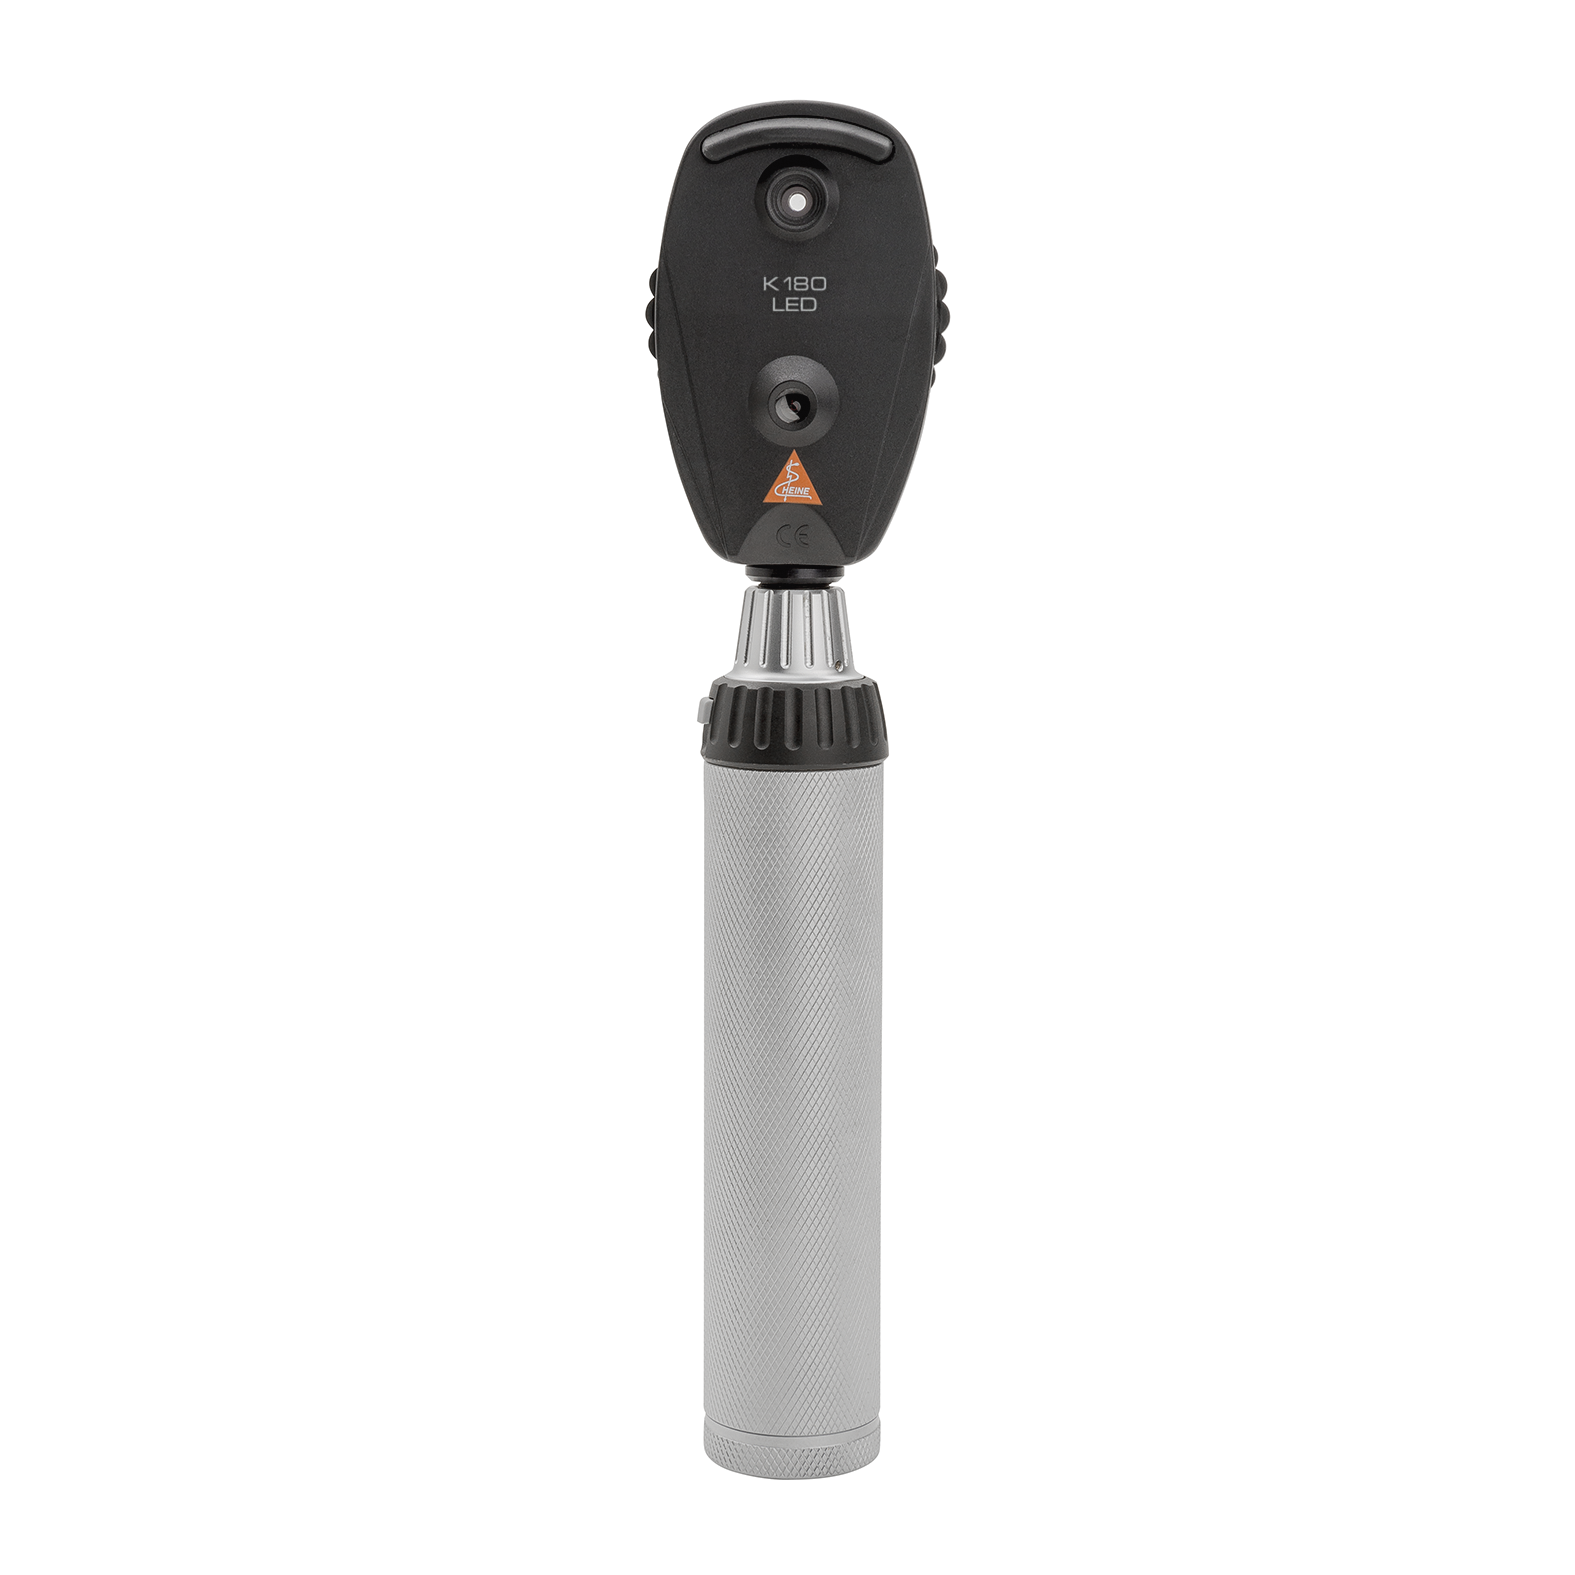 Oftalmoscopio HEINE K180, en versión estándar con rueda de apertura 1, estuche blando, mango recargable BETA4 USB con cable USB y fuente de alimentación enchufable